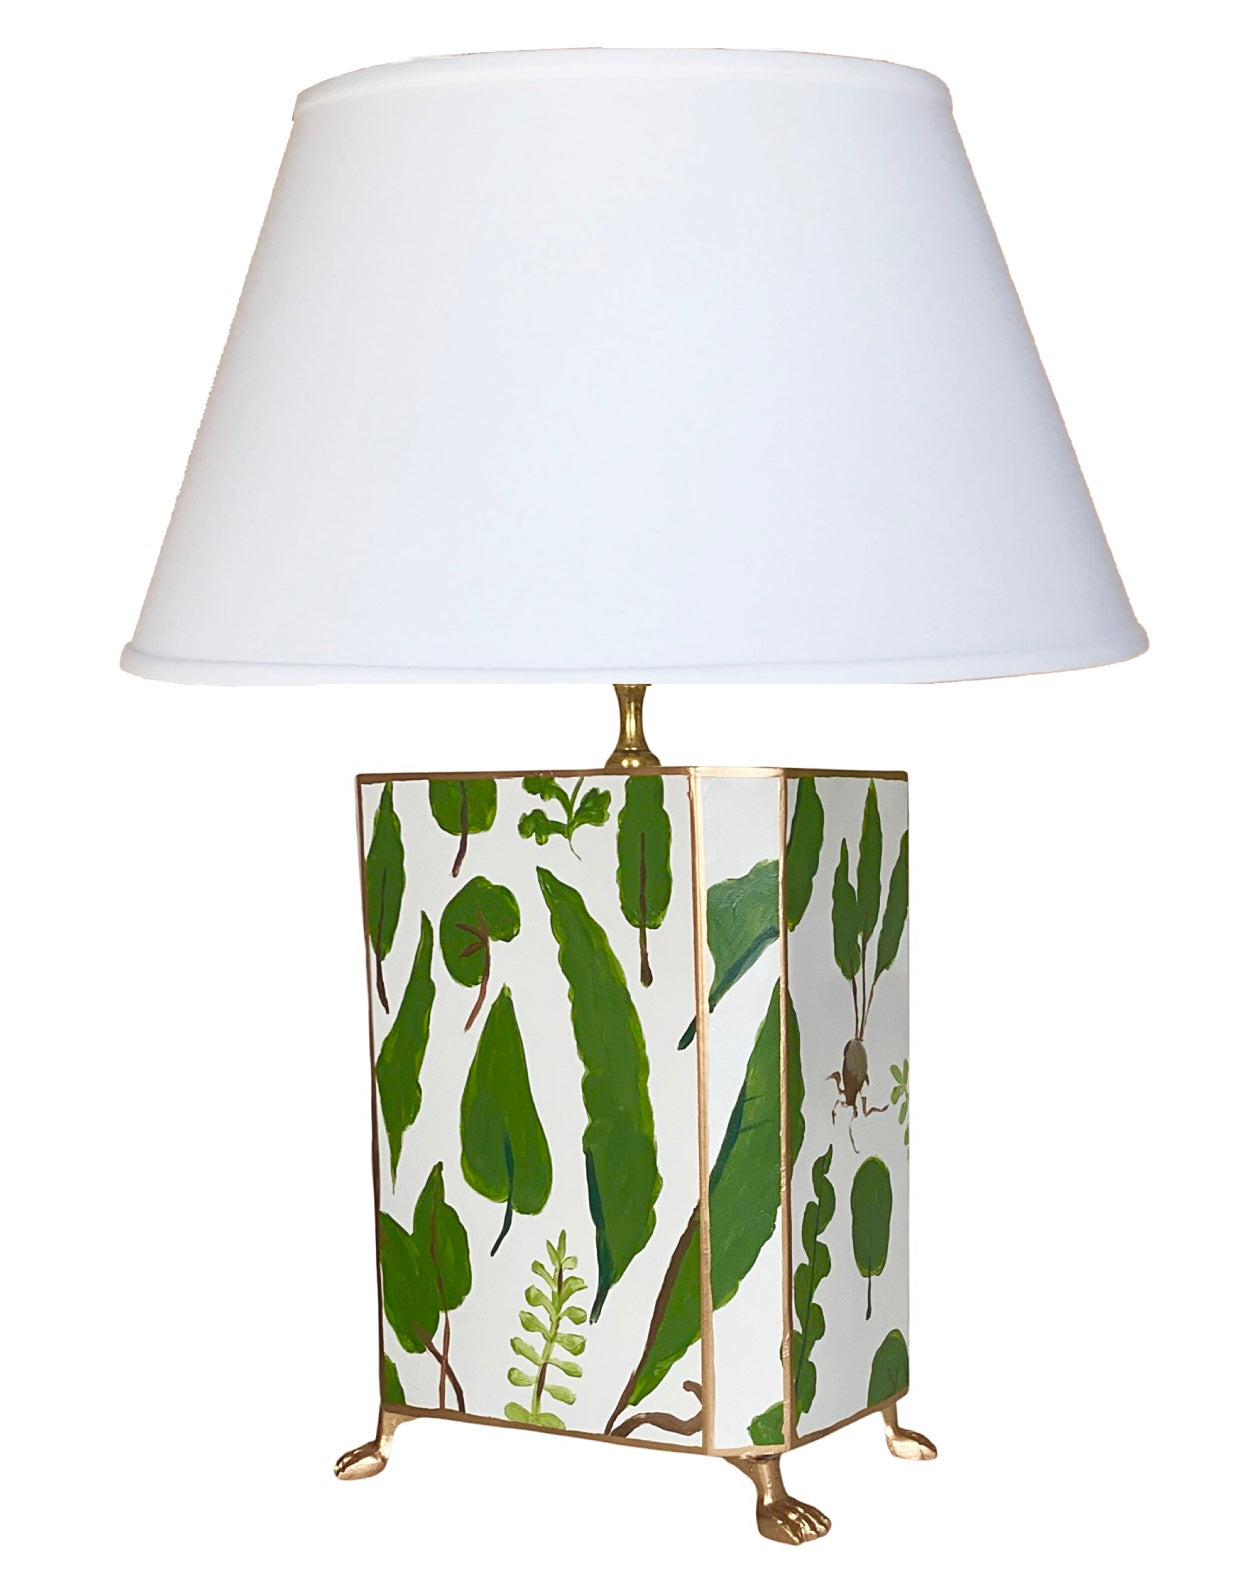 Dana Gibson Fern Lamp